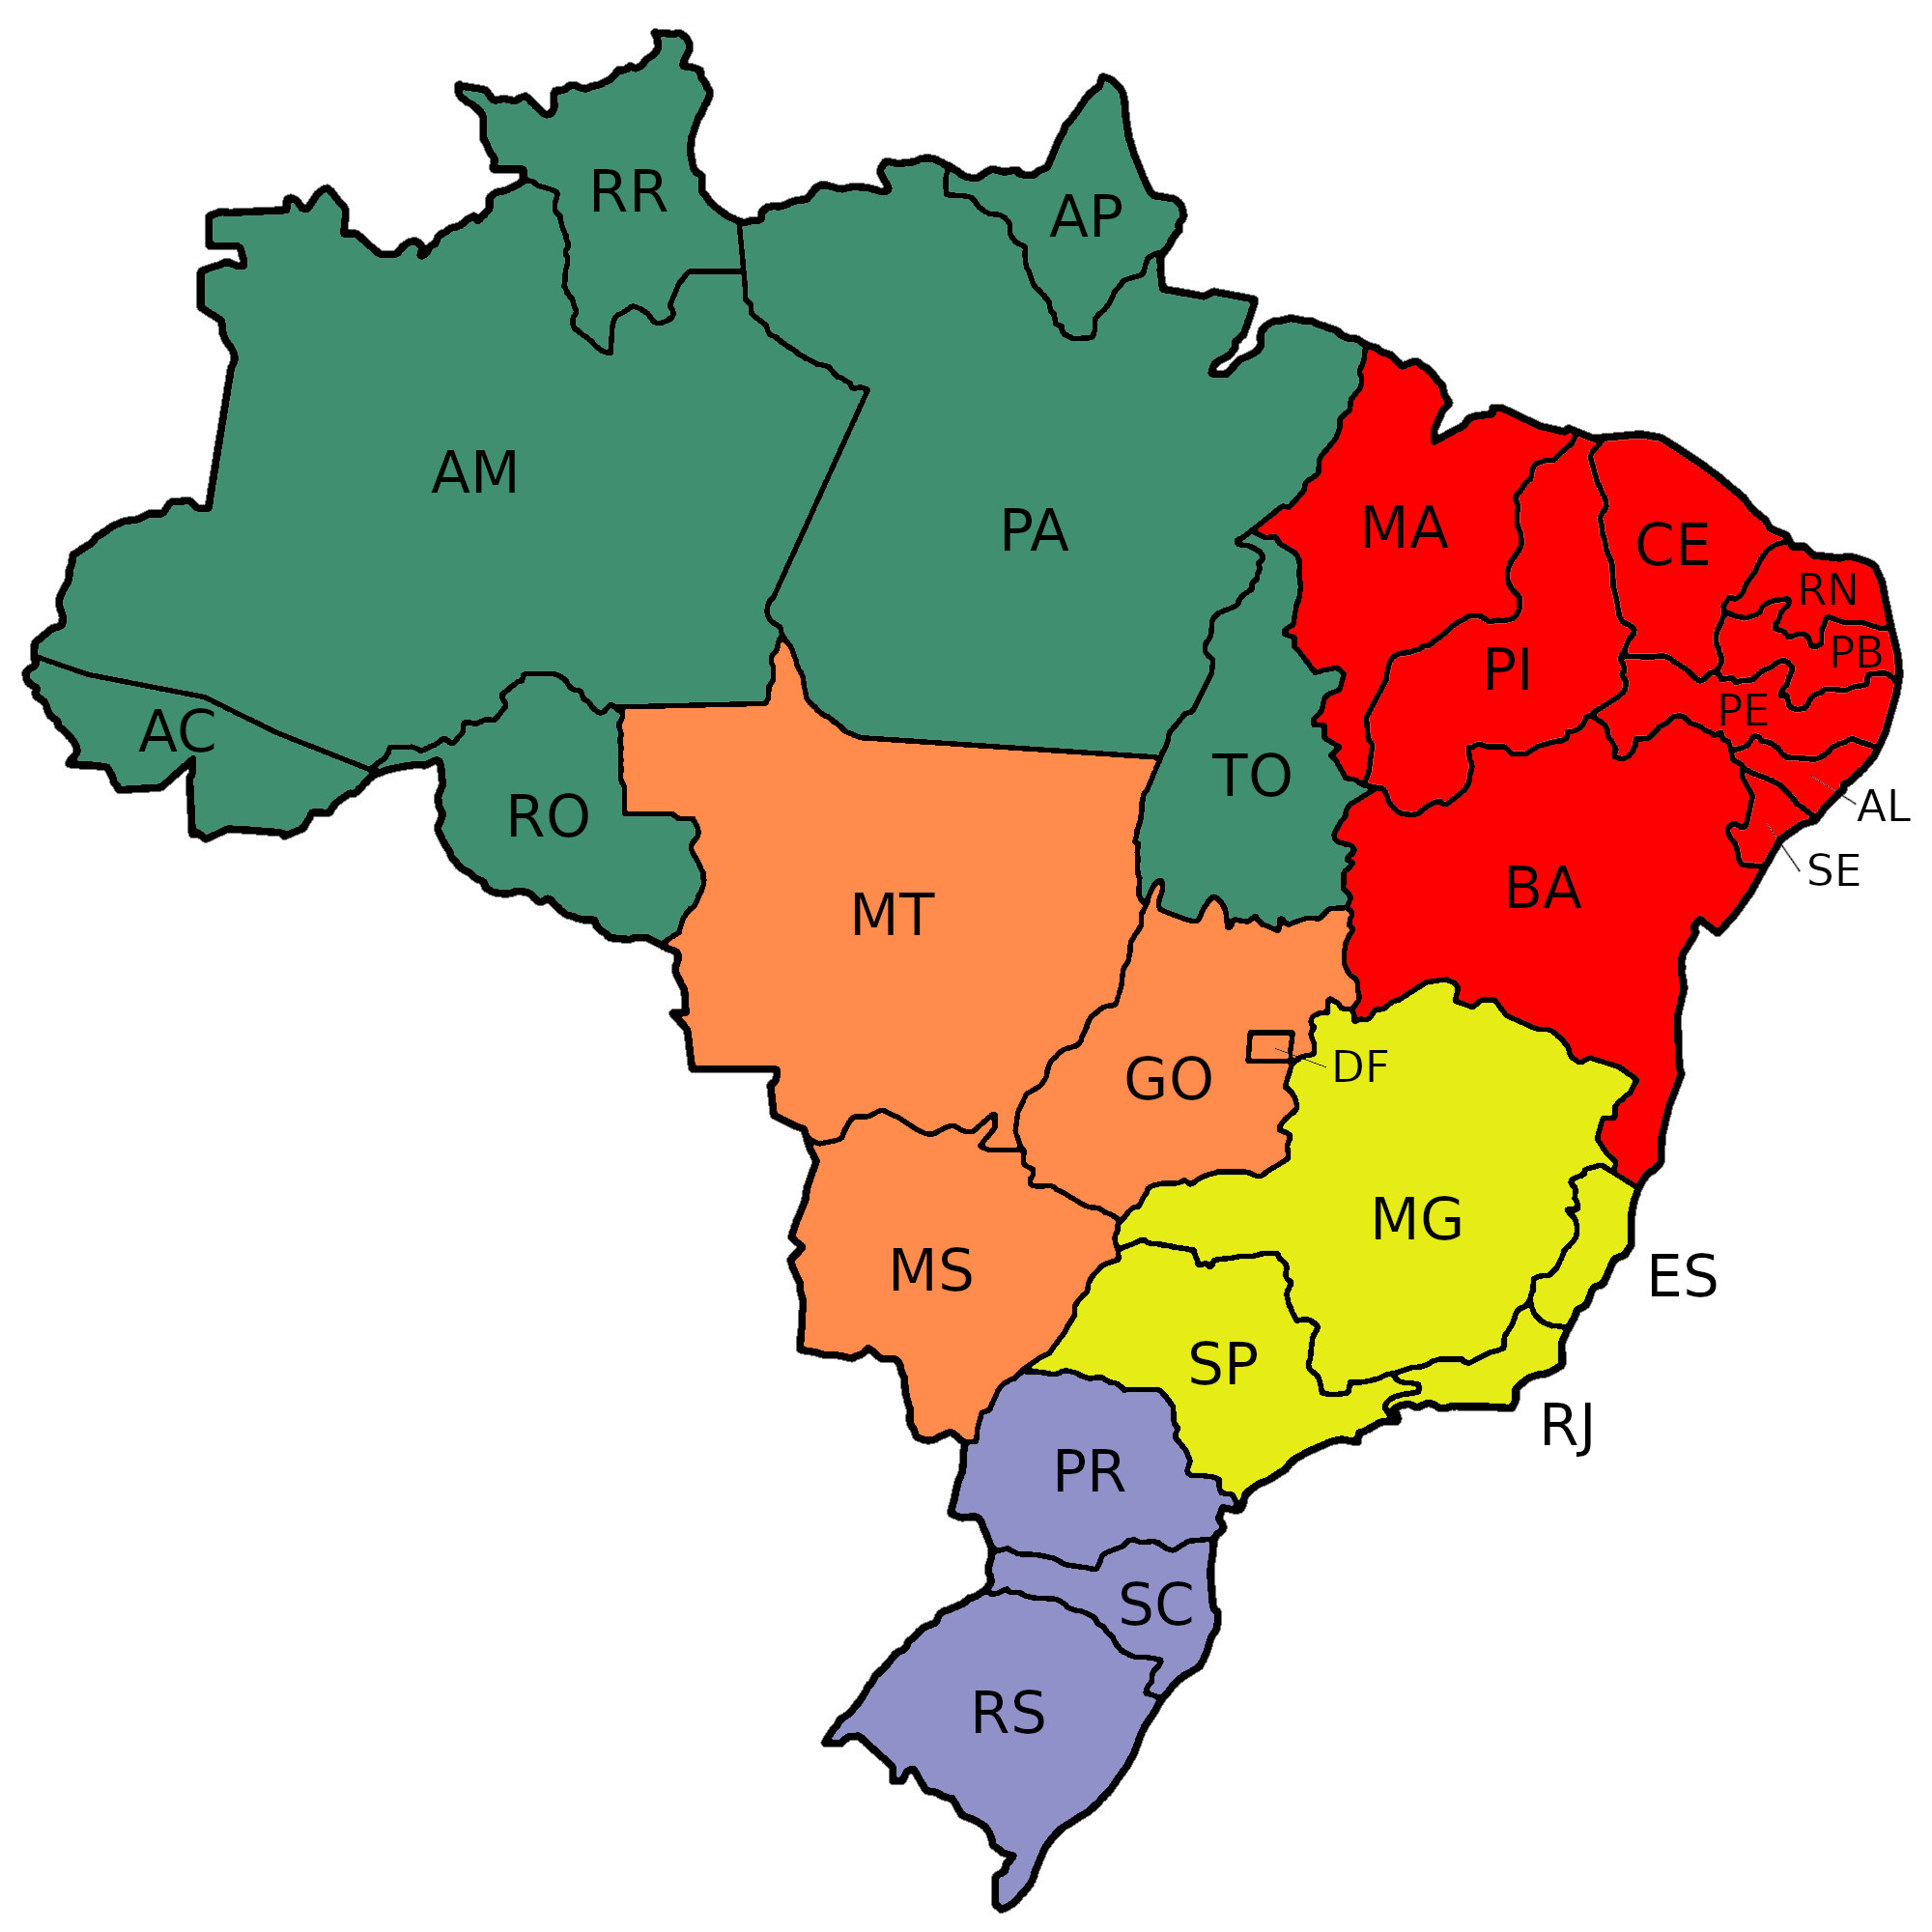 mapa do brasil por estados Mapa Do Brasil Por Estados E Regioes Em Branco E Colorido Geografia Infoescola mapa do brasil por estados